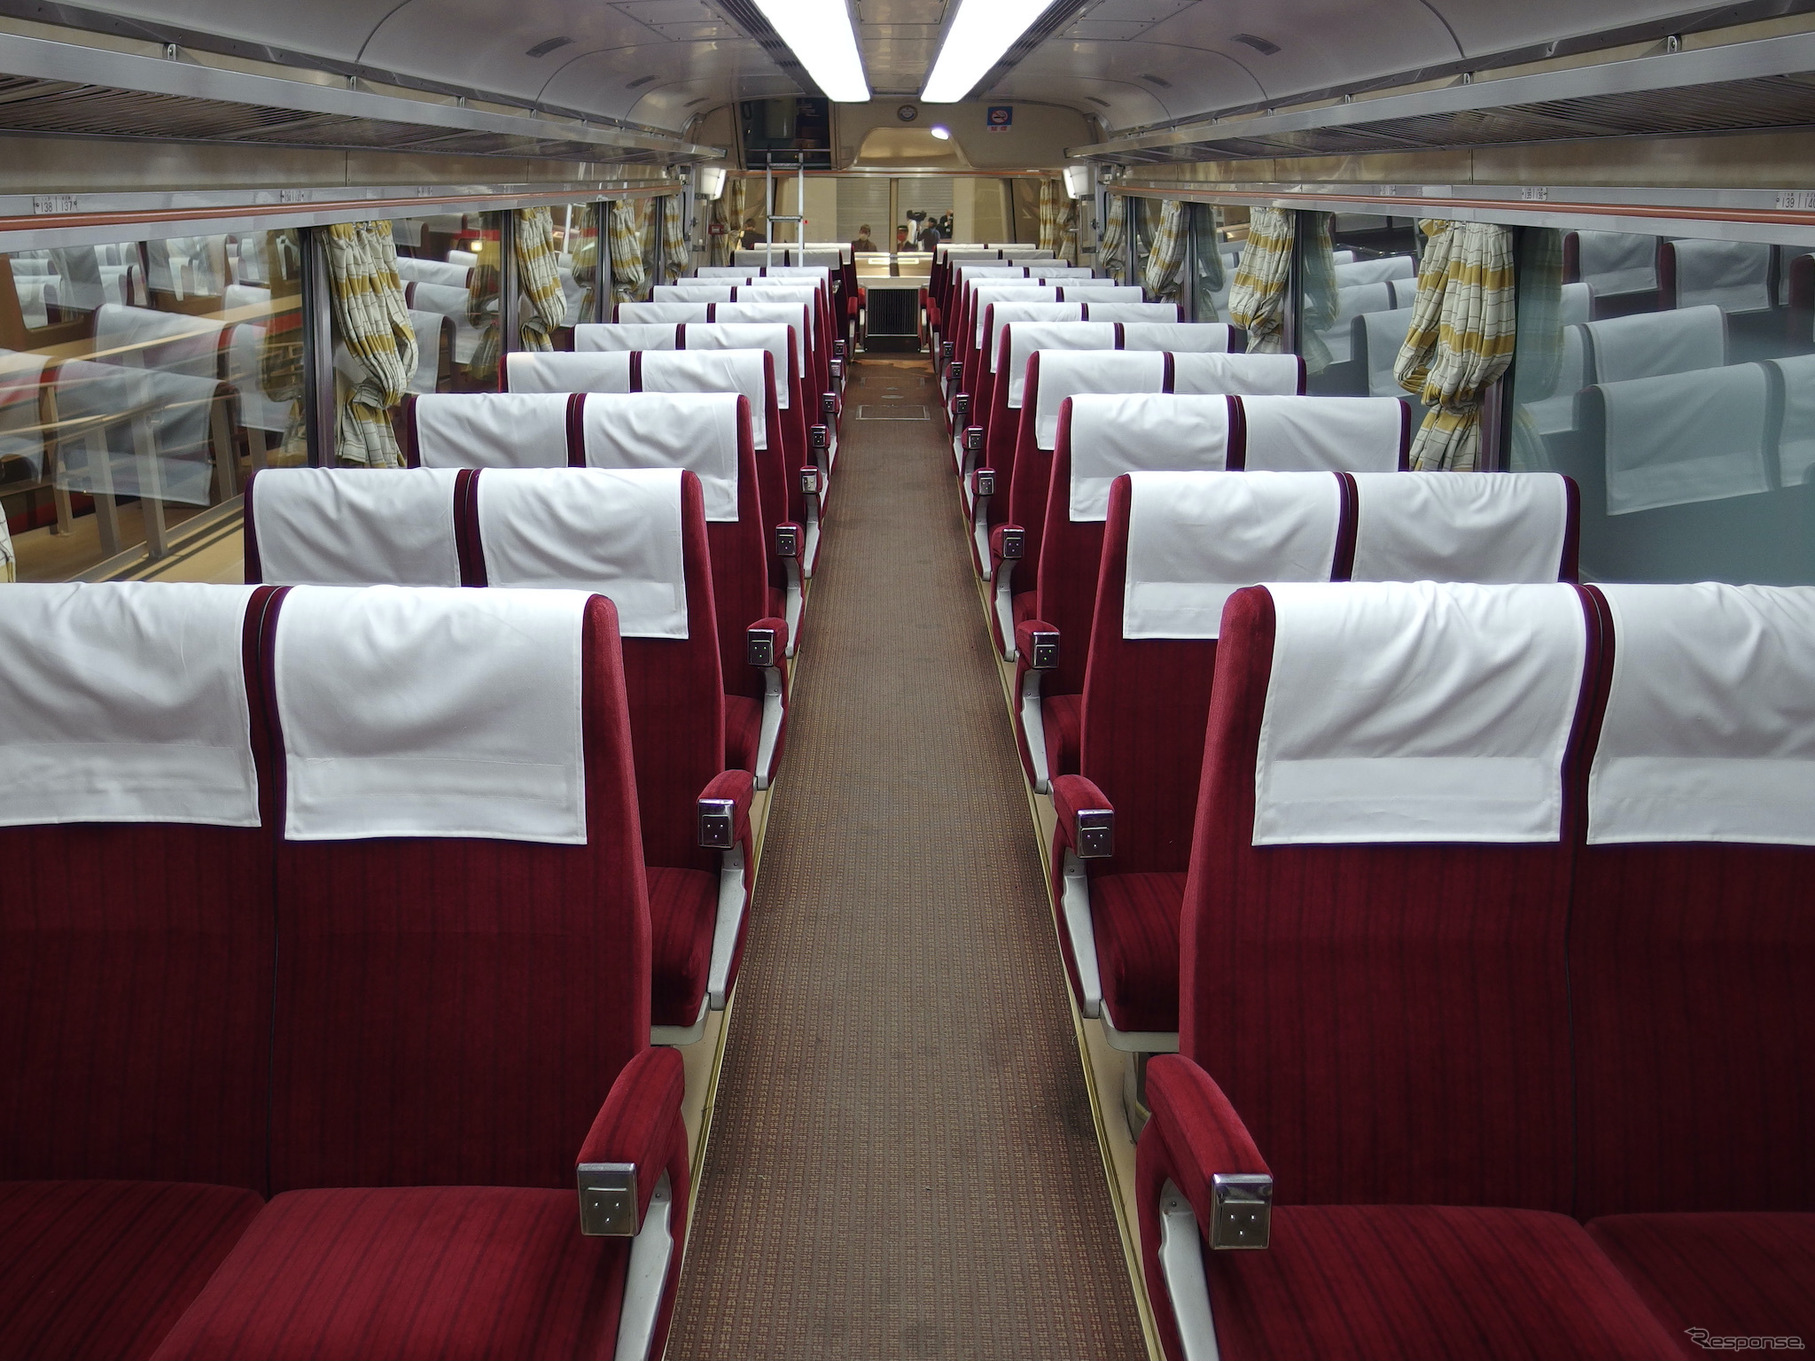 小田急ロマンスカーミュージアムに保存展示されている3100形NSE車の車内。1980年までは日東紅茶のみがこの車内で「走る喫茶室」を運営していた。